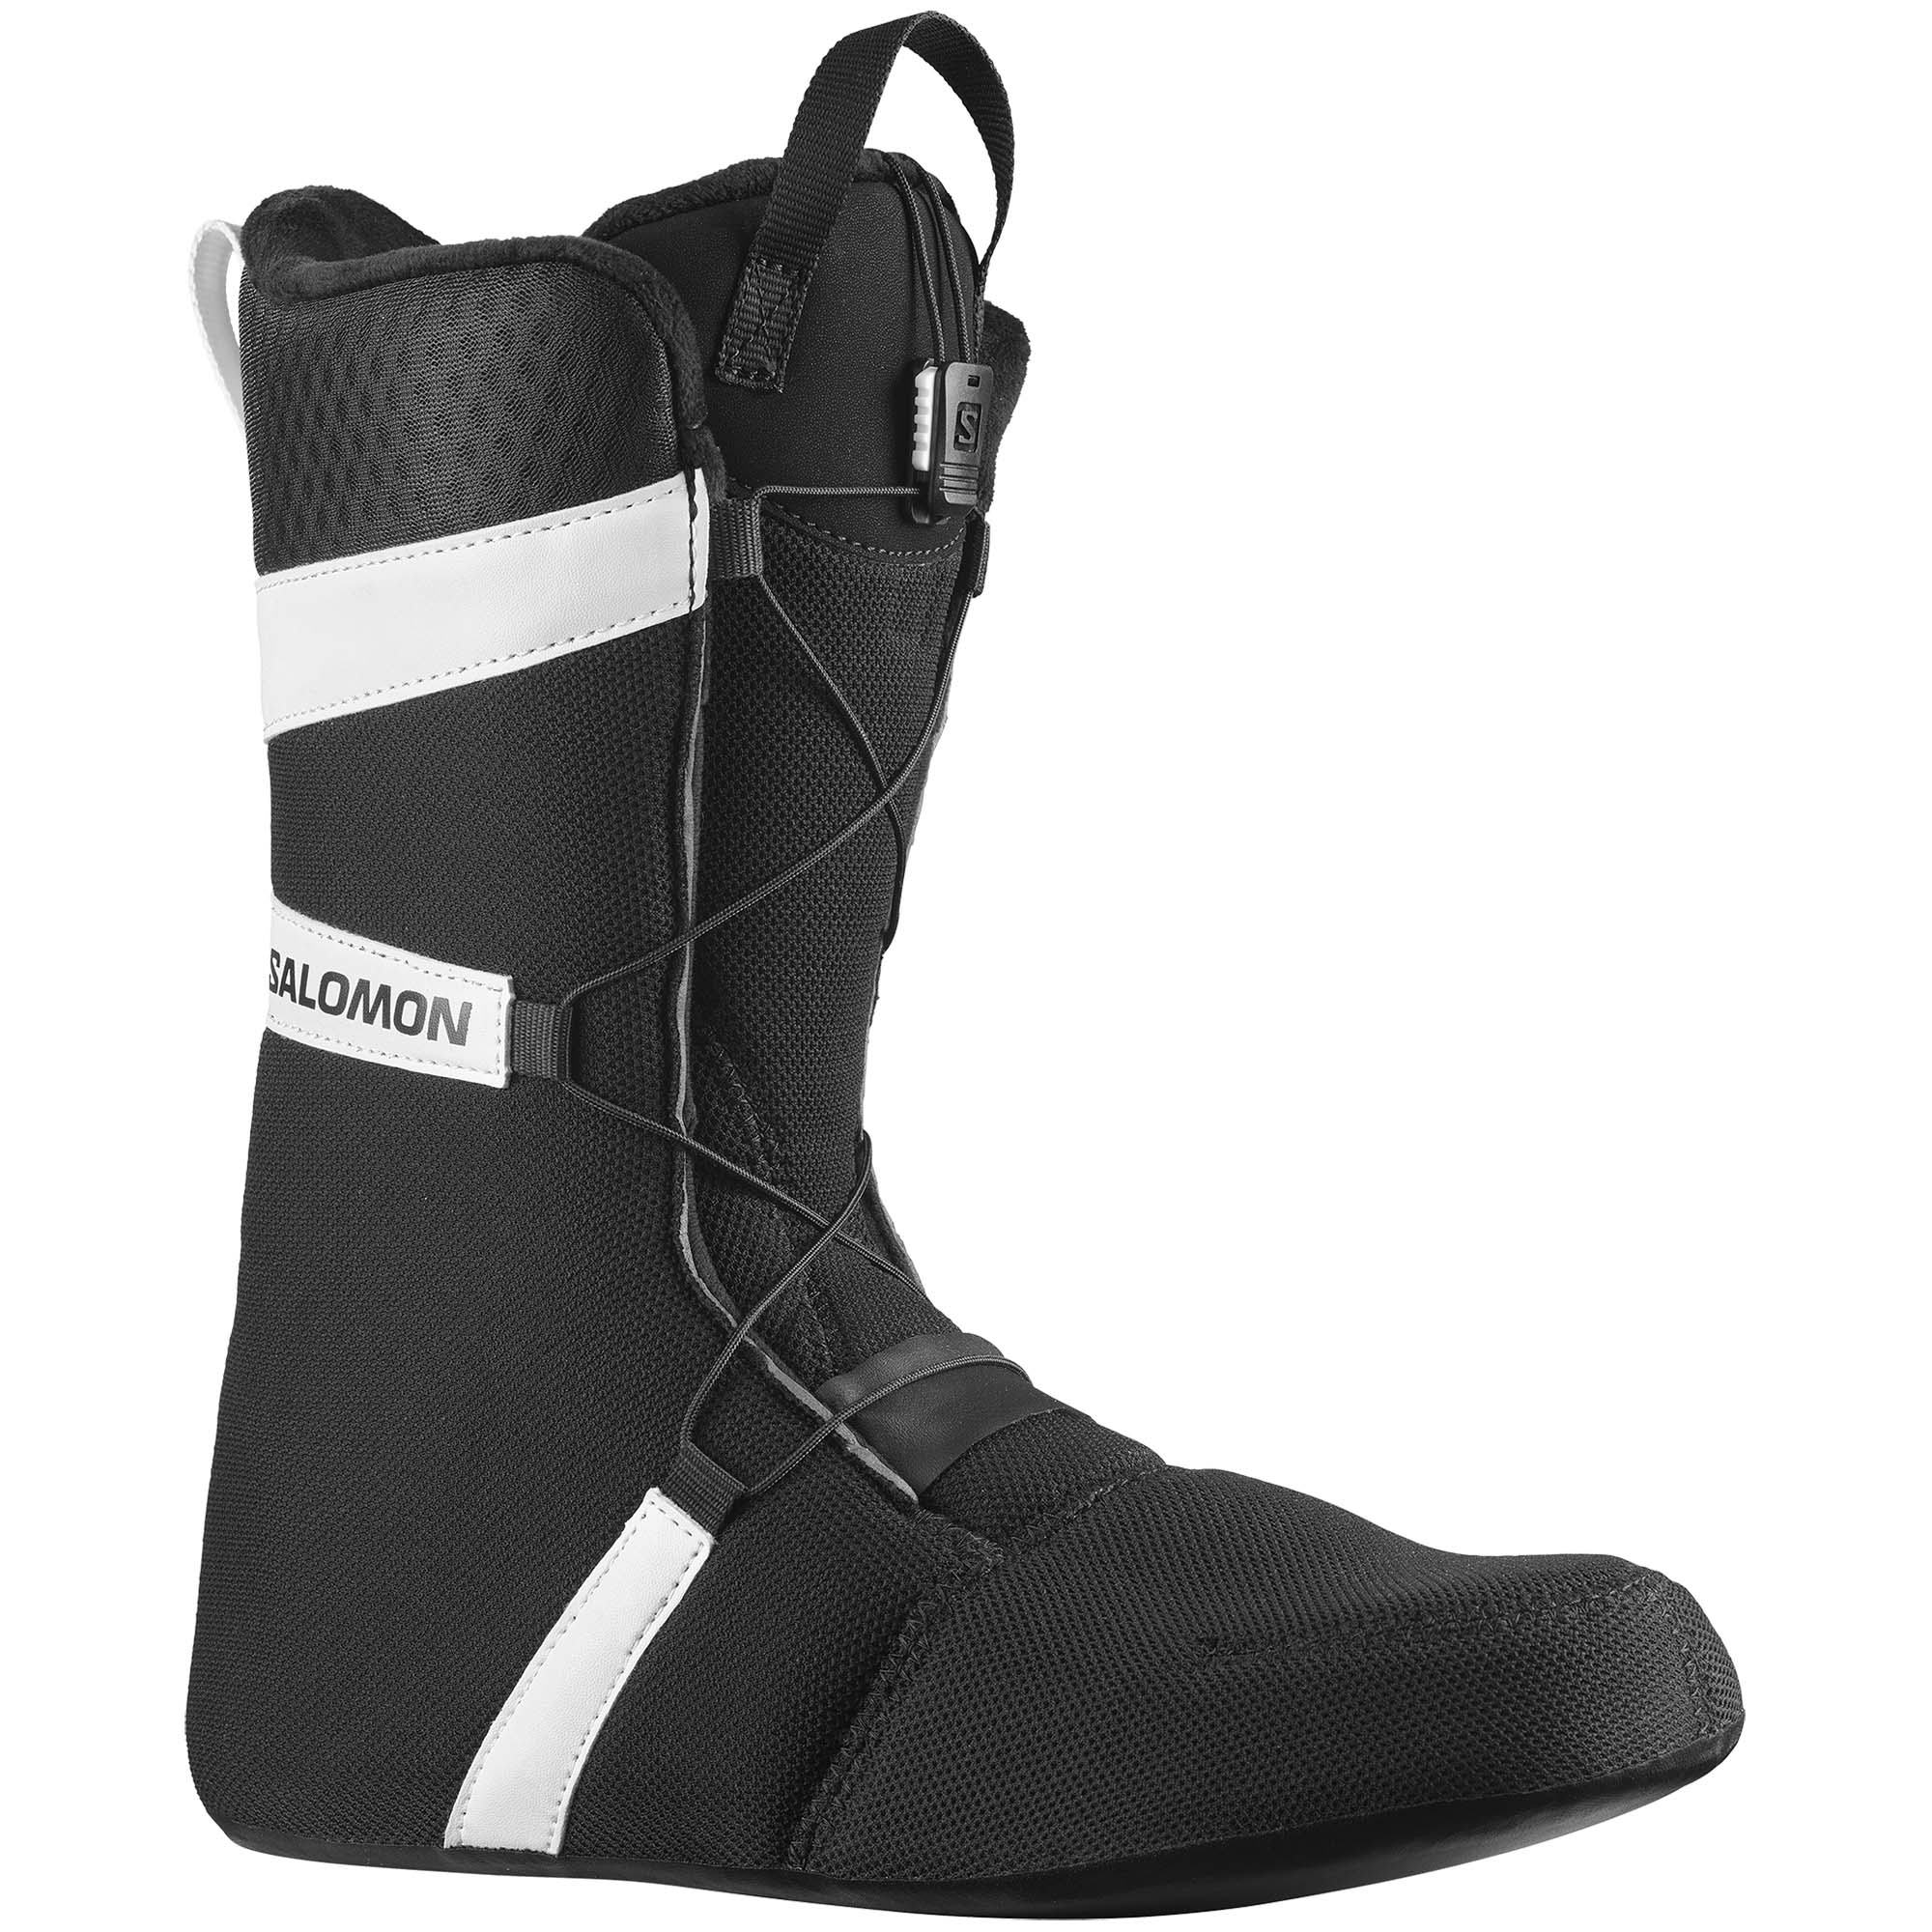 Salomon Launch Lace BOA SJ  Snowboard Boots